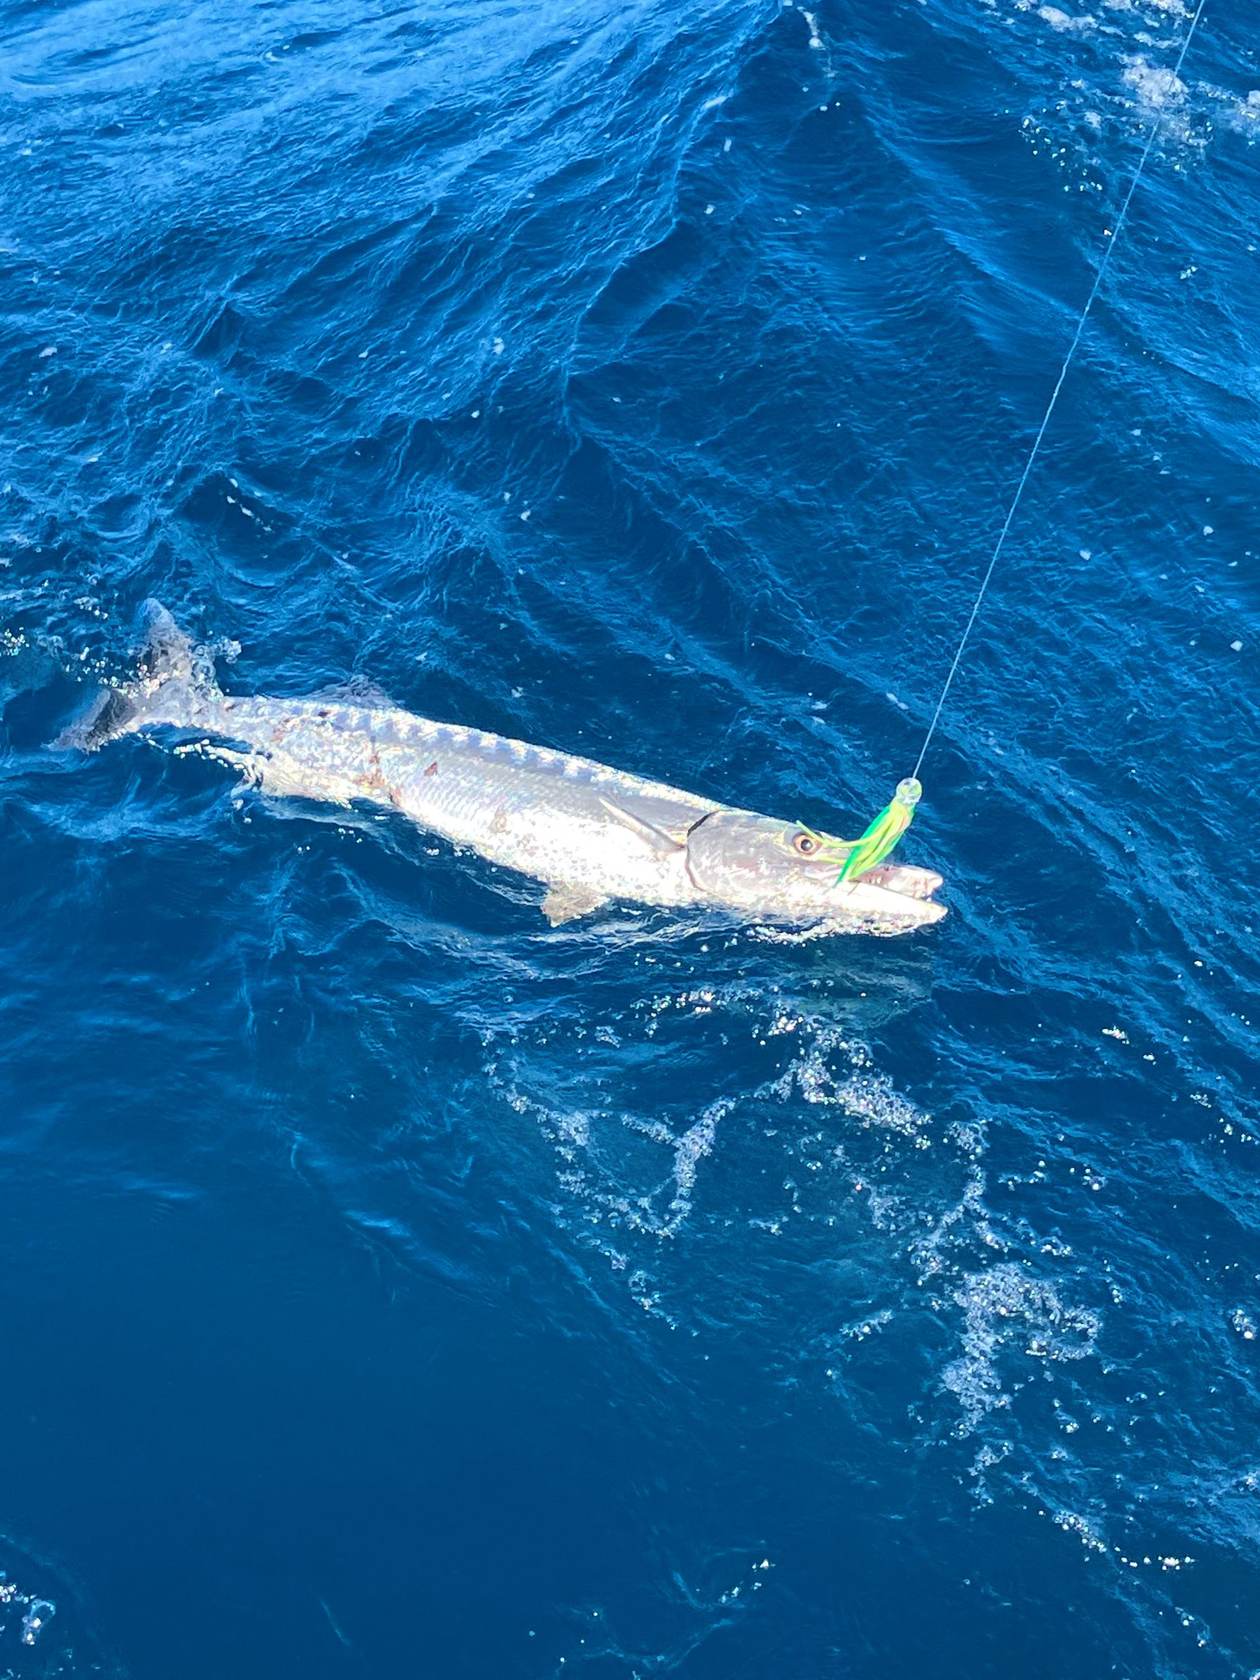 Barracuda am Angelhaken in tiefblauem Wasser